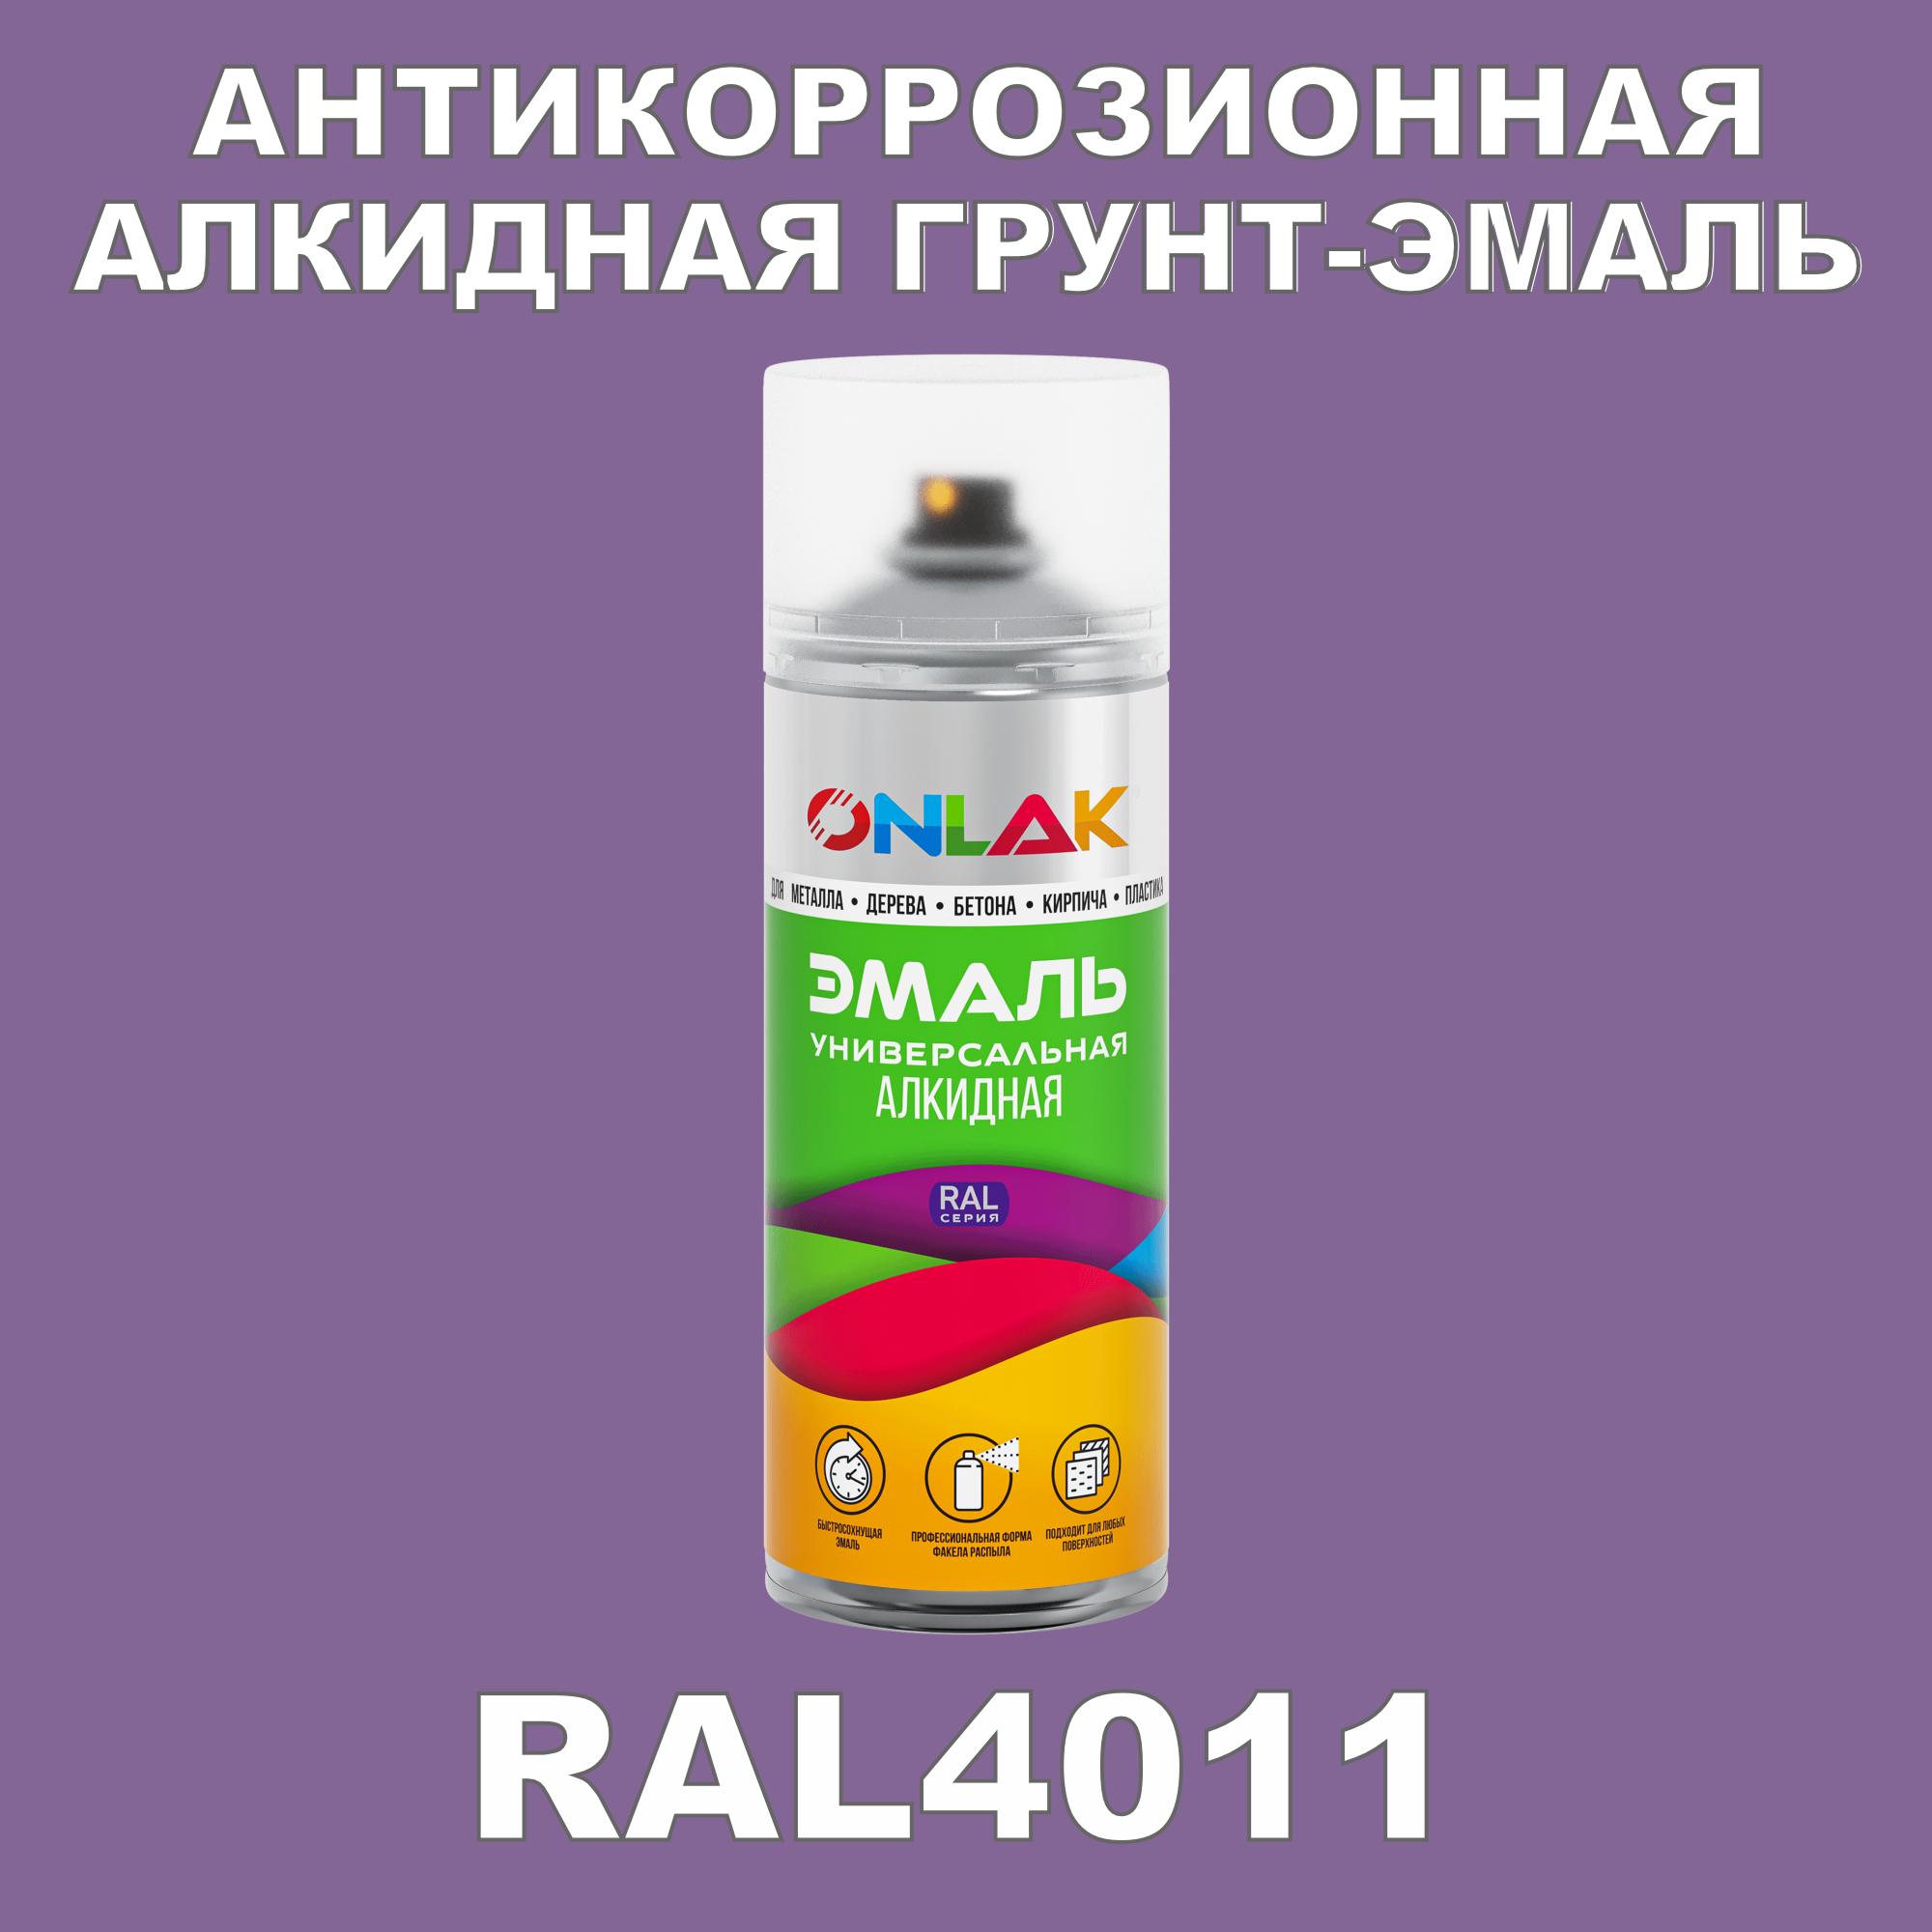 Антикоррозионная грунт-эмаль ONLAK RAL 4011,фиолетовый,550 мл artuniq color violet цветной грунт для аквариума фиолетовый 3 кг